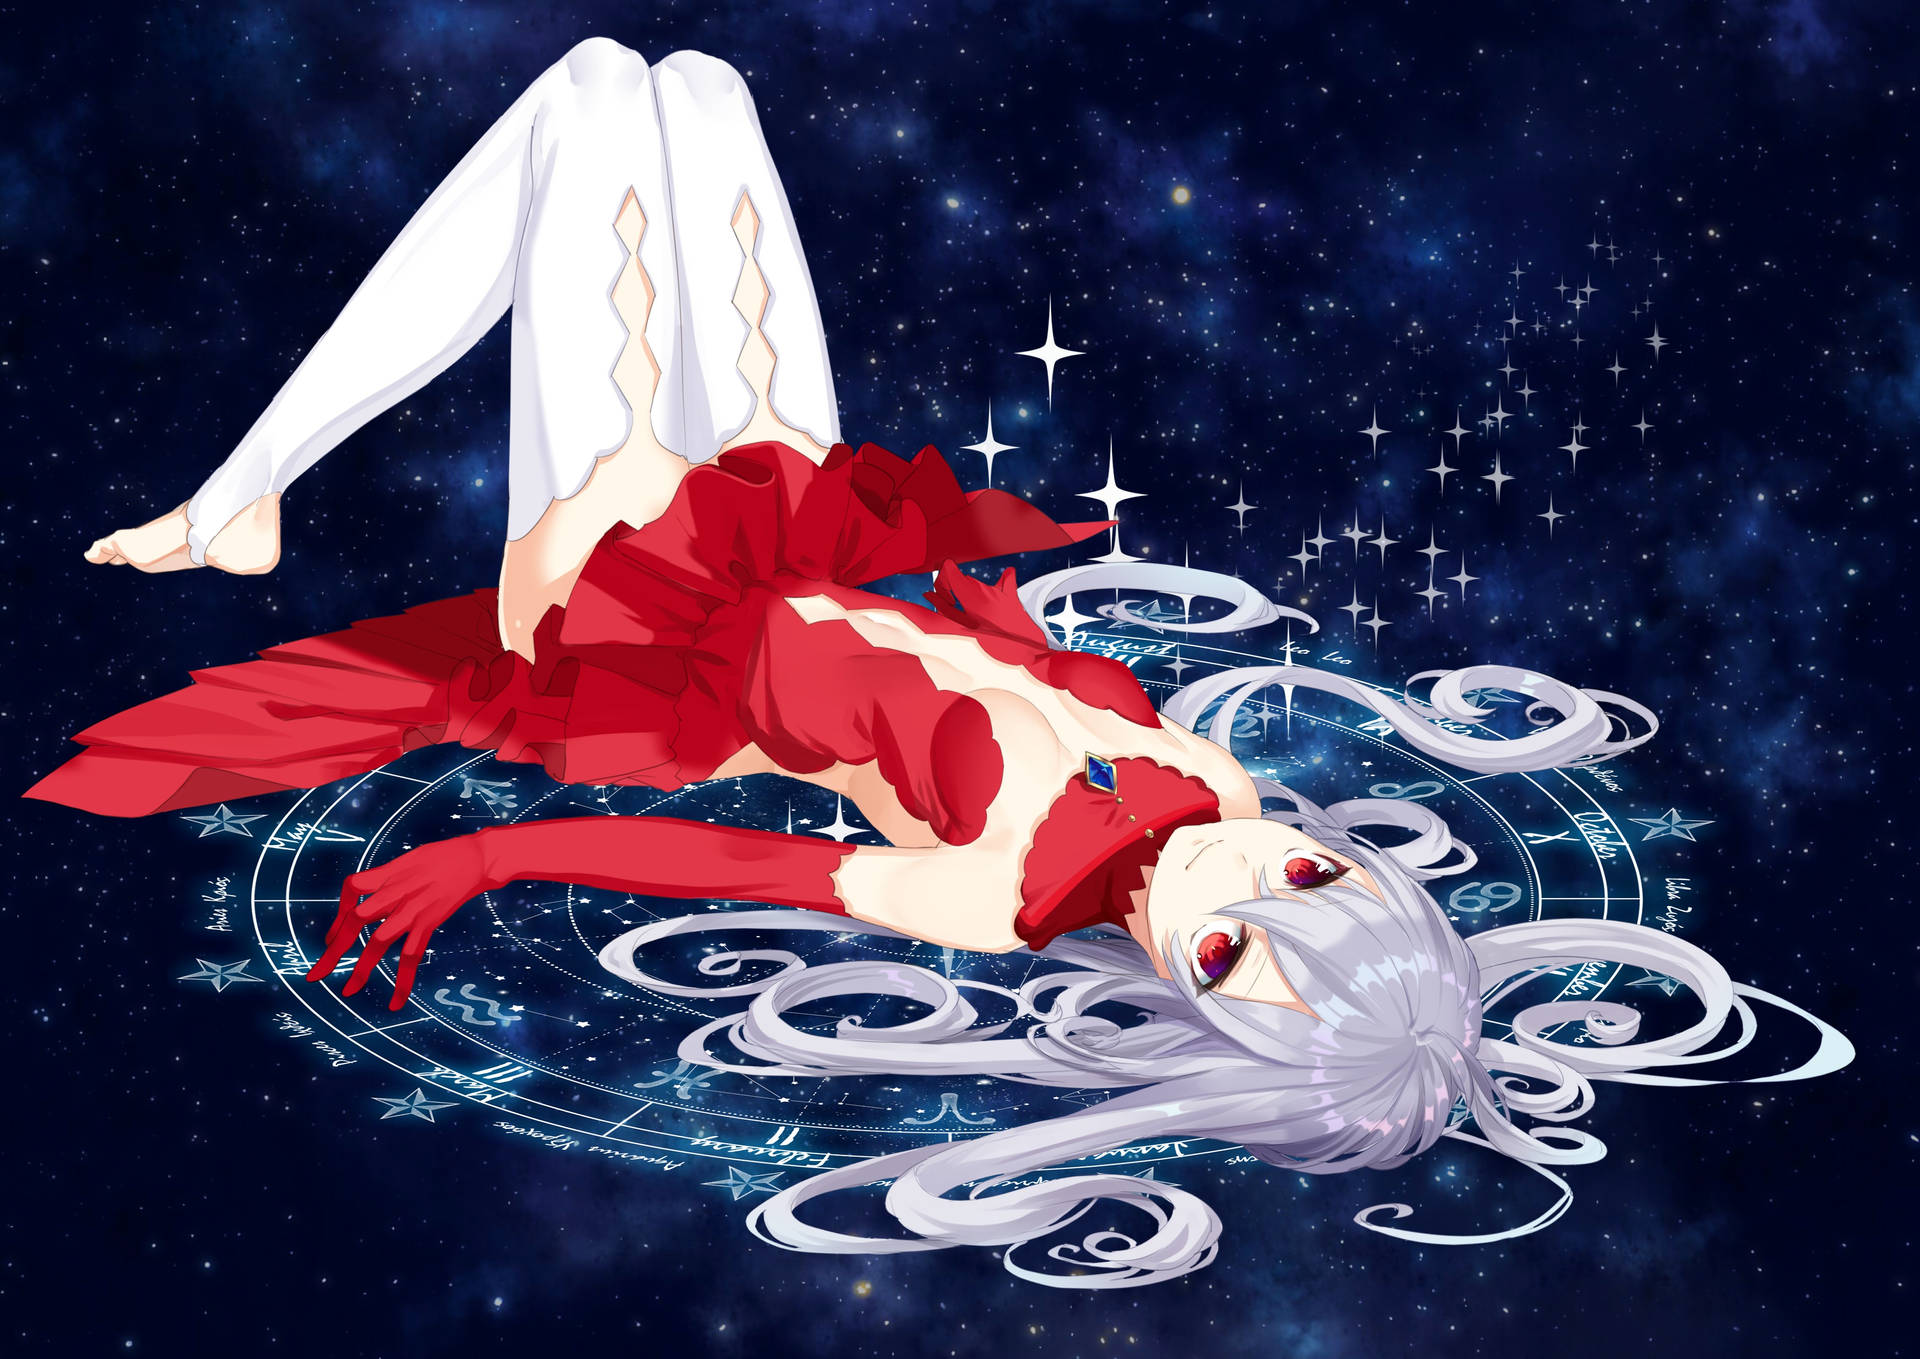 Horoscope Reader Anime Background